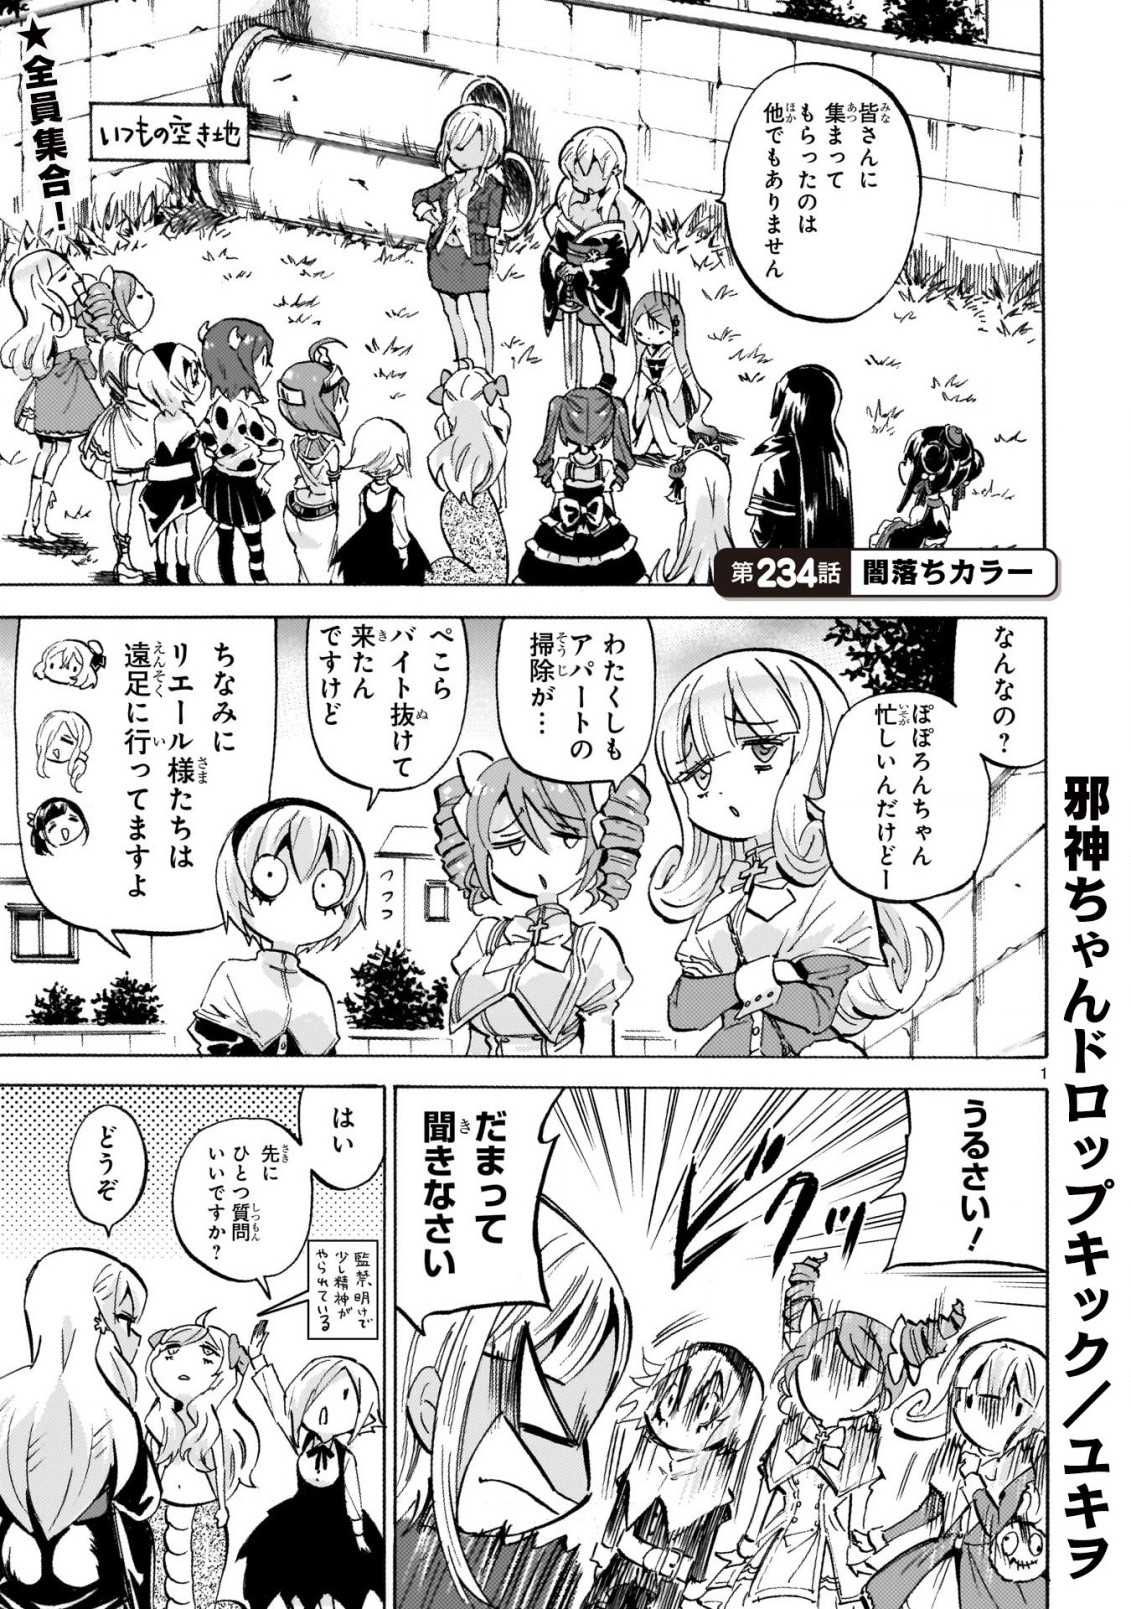 Jashin-chan Dropkick - Chapter 234 - Page 1